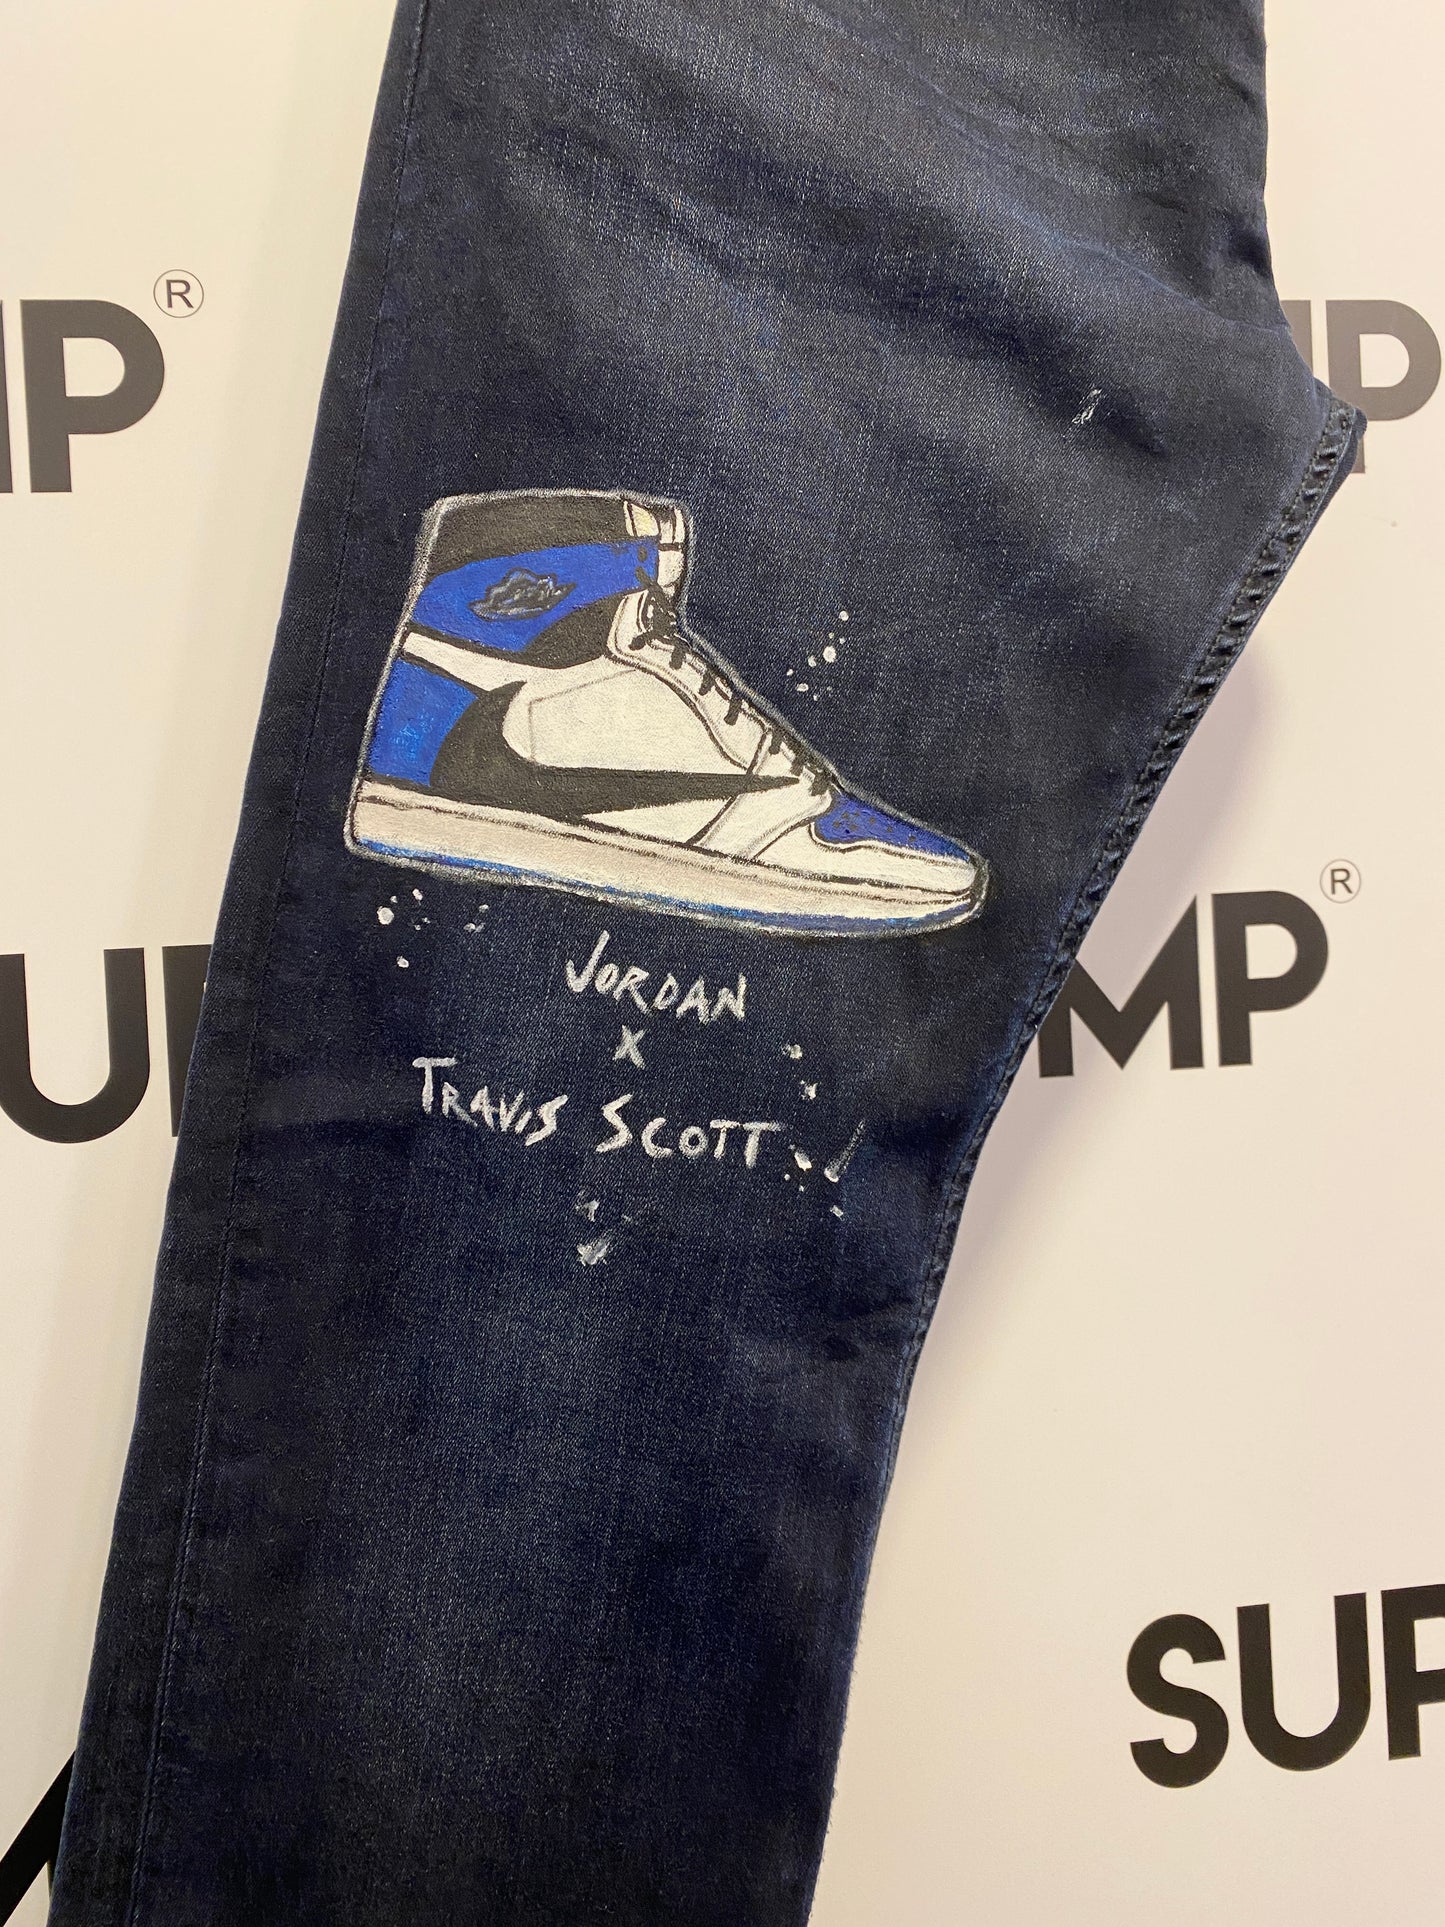 Jeans Custom “Jordan x Travis Scott”